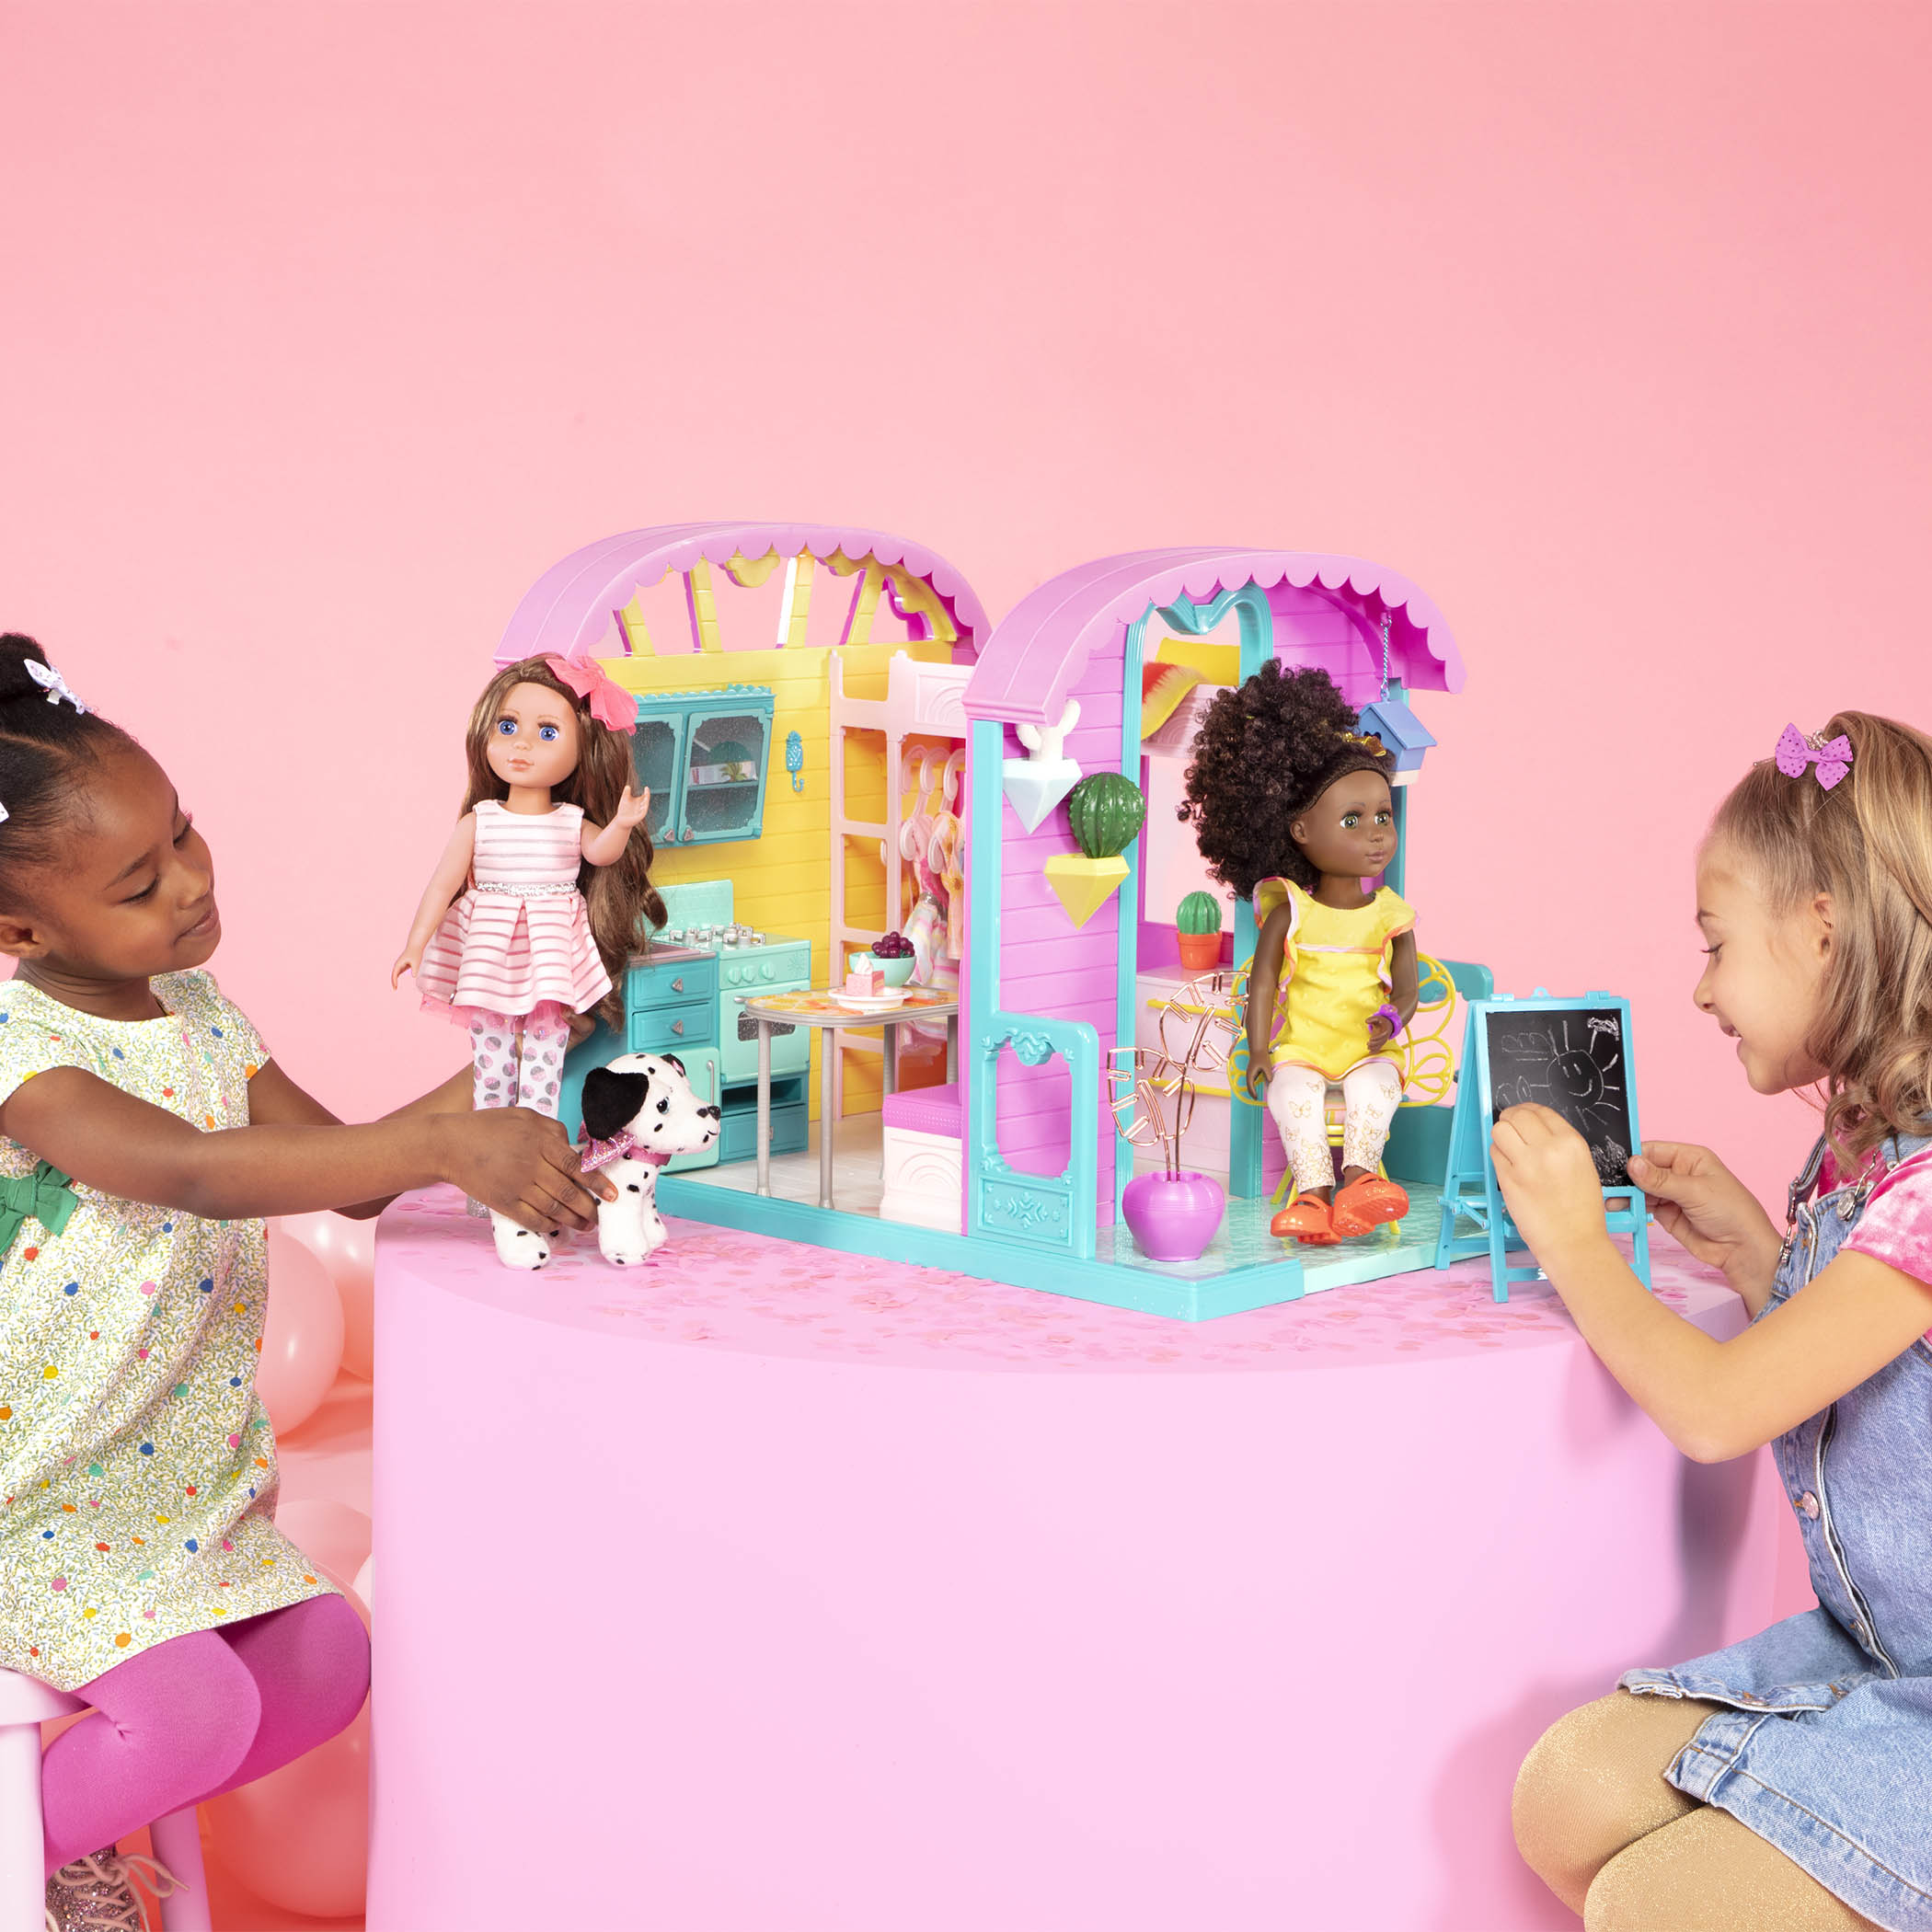 Glitter Girls Home Decor Set For 14 Dolls : Target